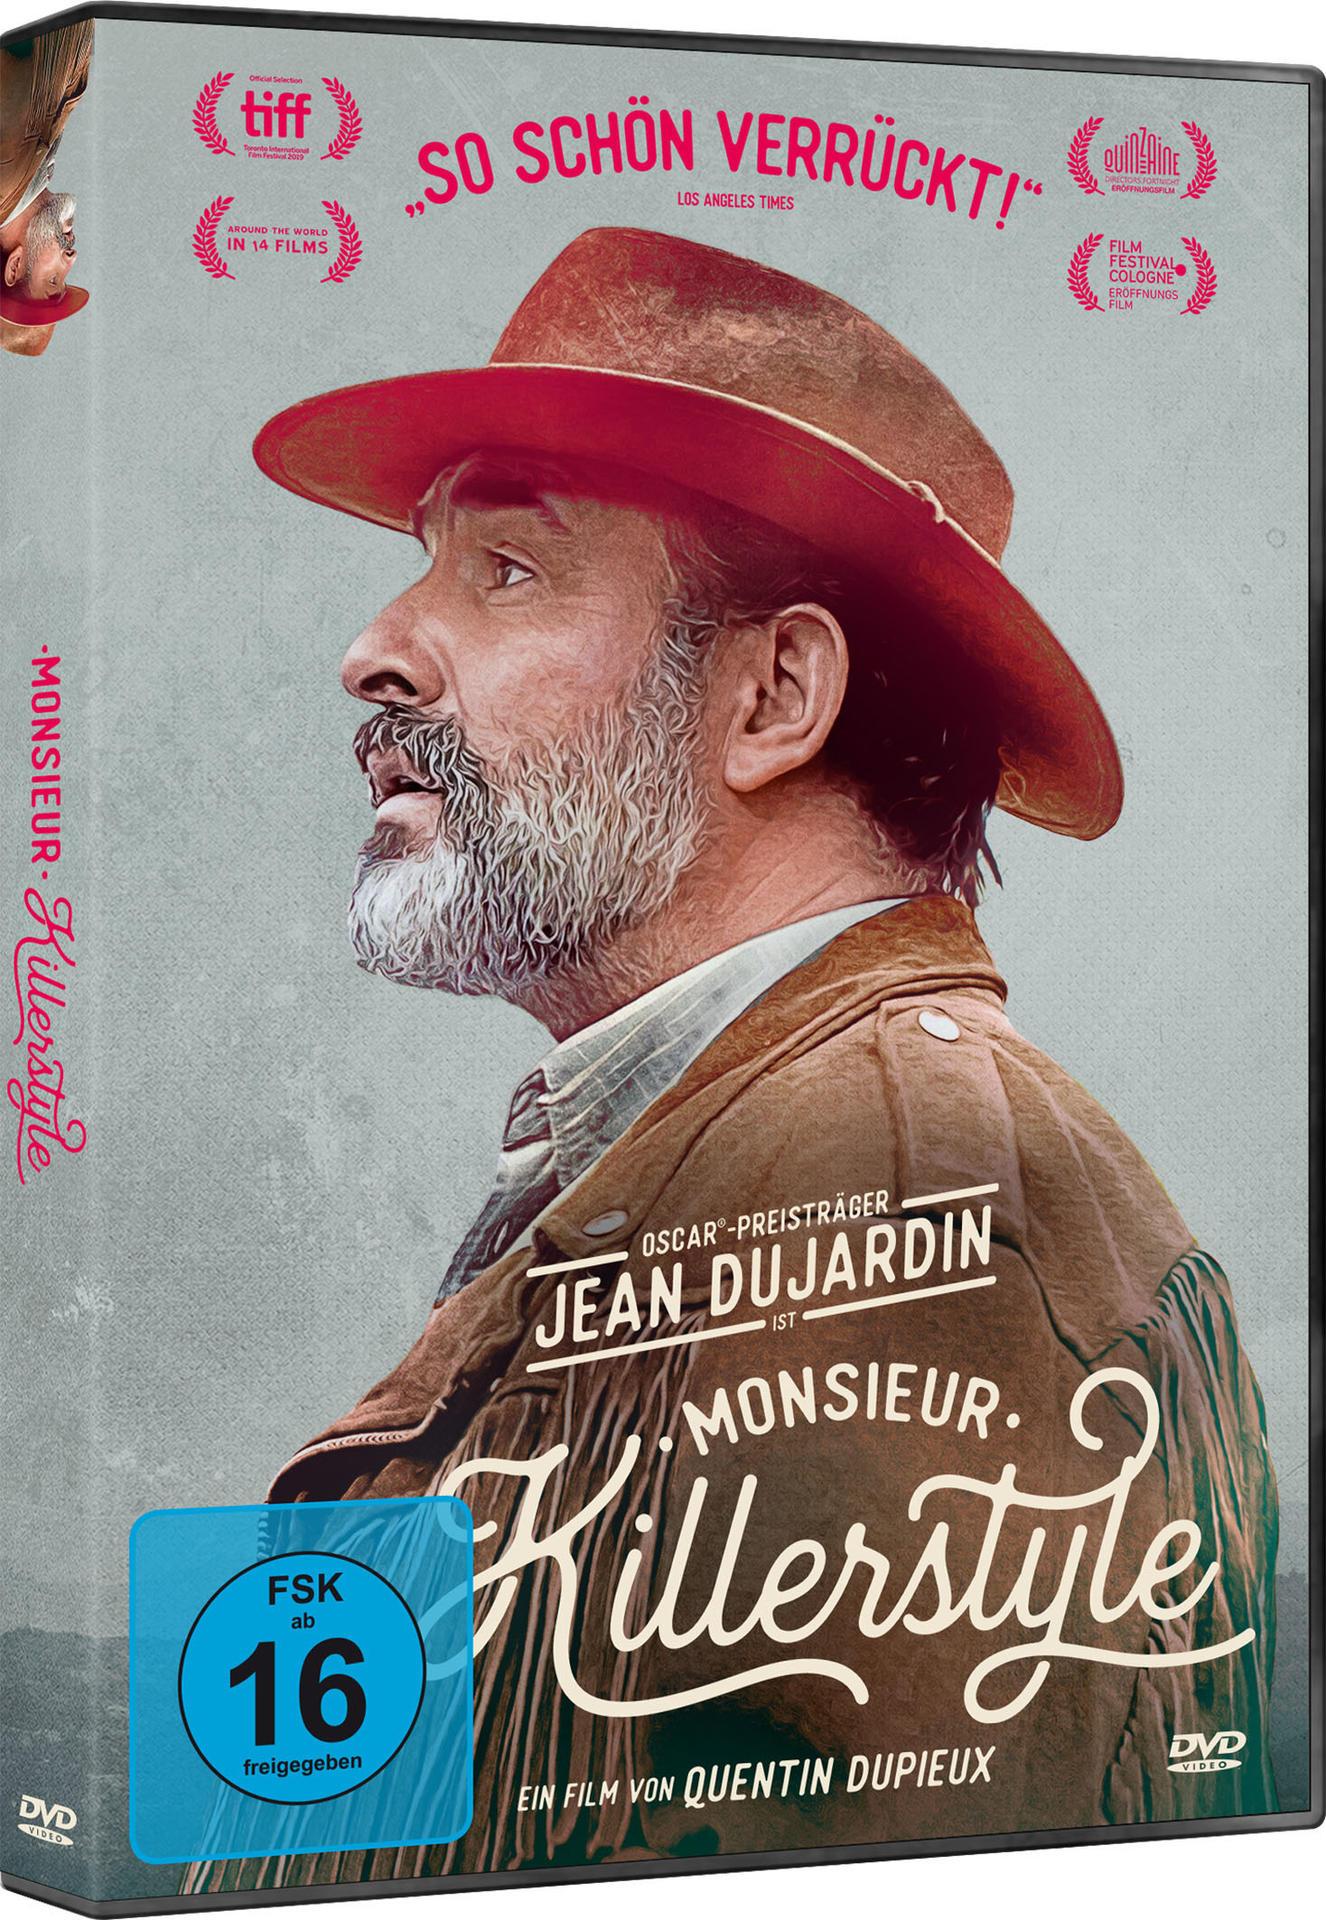 Killerstyle DVD Monsieur